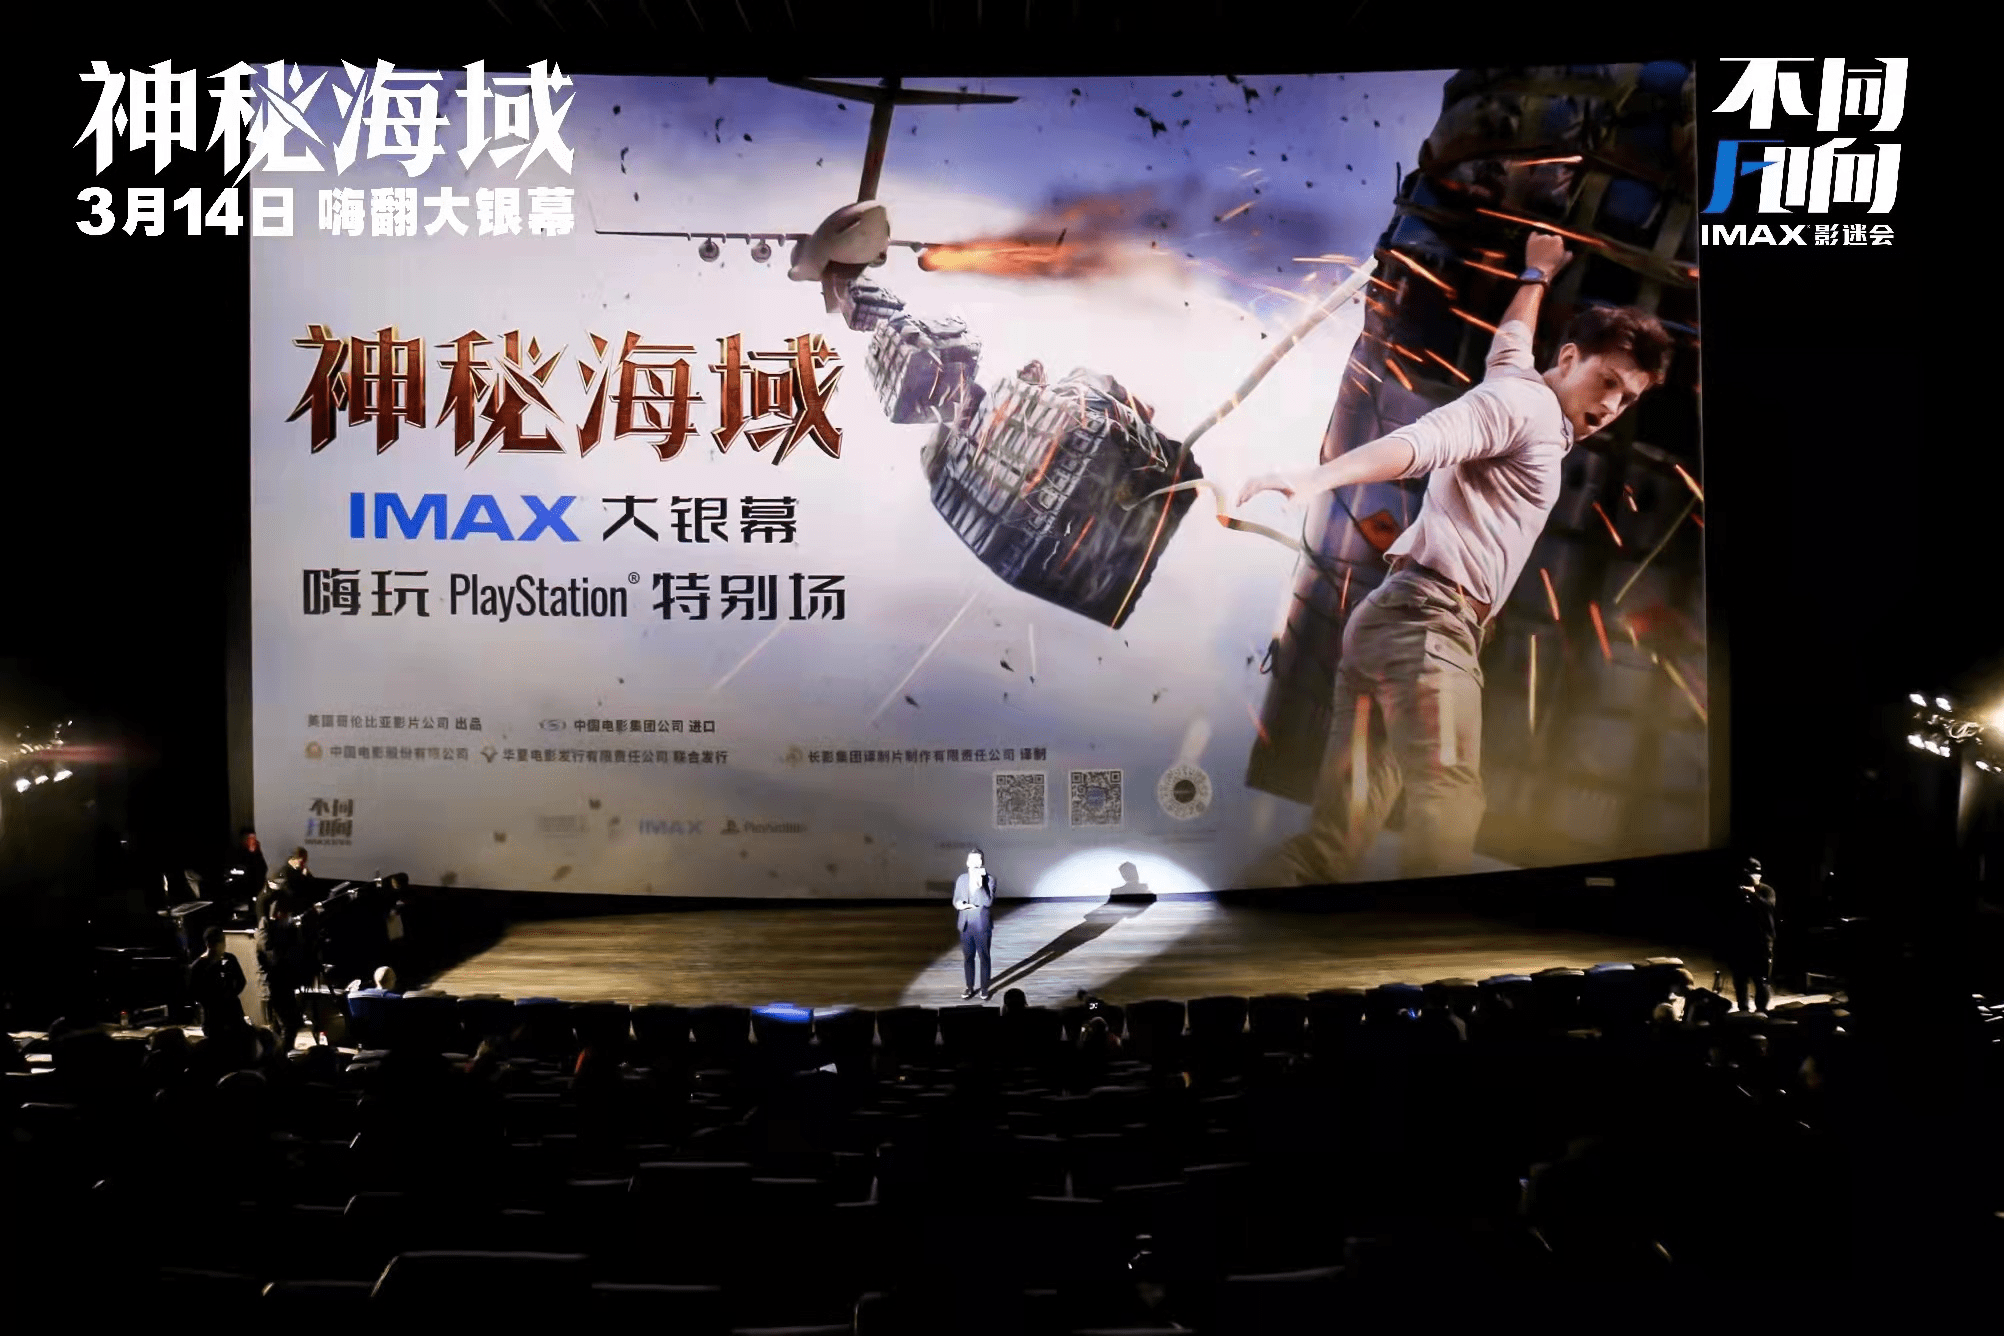 《神秘海域》IMAX首映观影看嗨观众 获赞“大银幕久违爽片超解压”